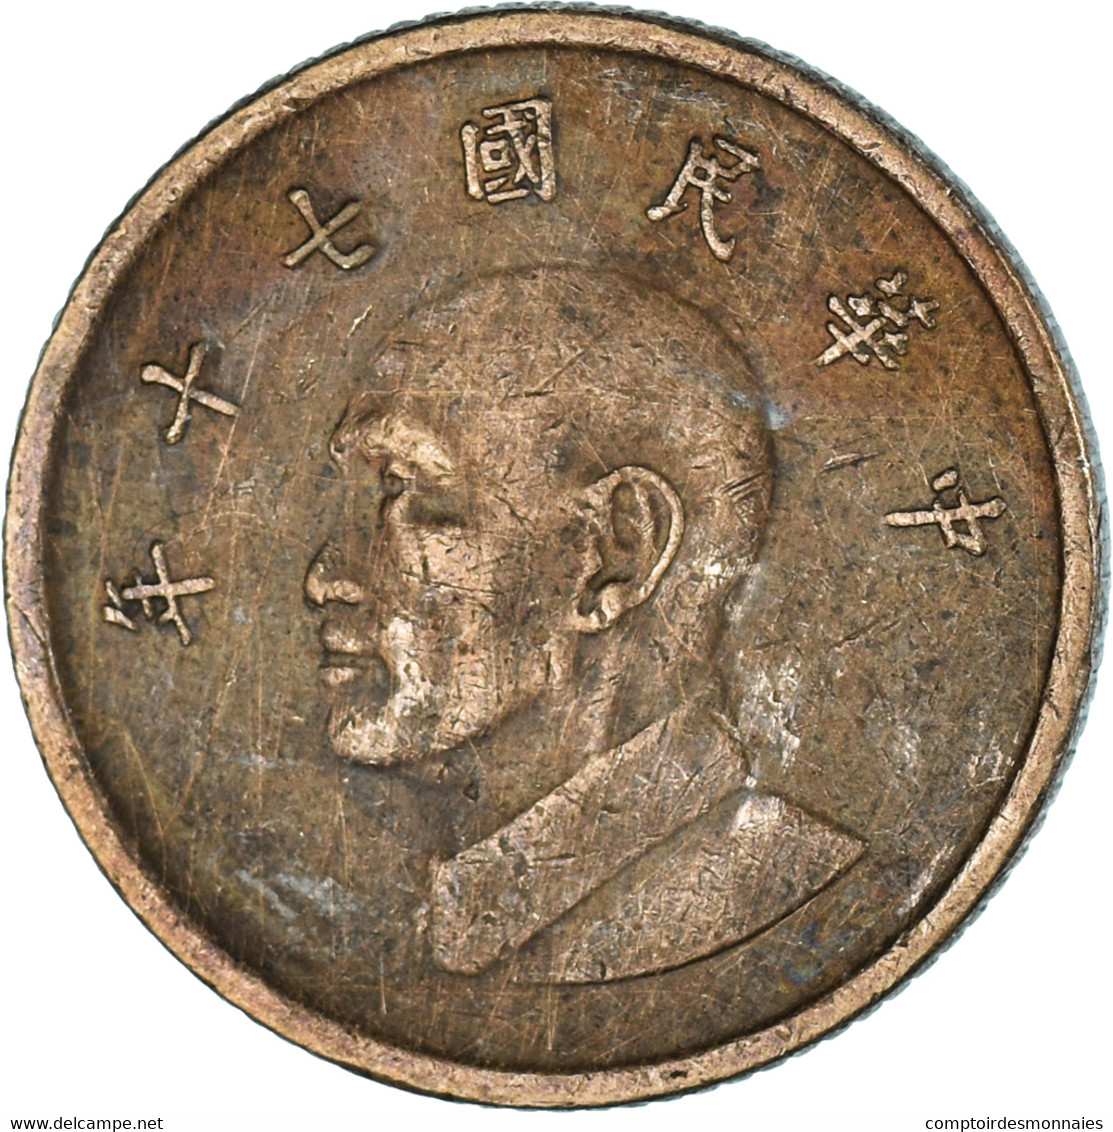 Monnaie, Yuan, 1981 - Taiwan